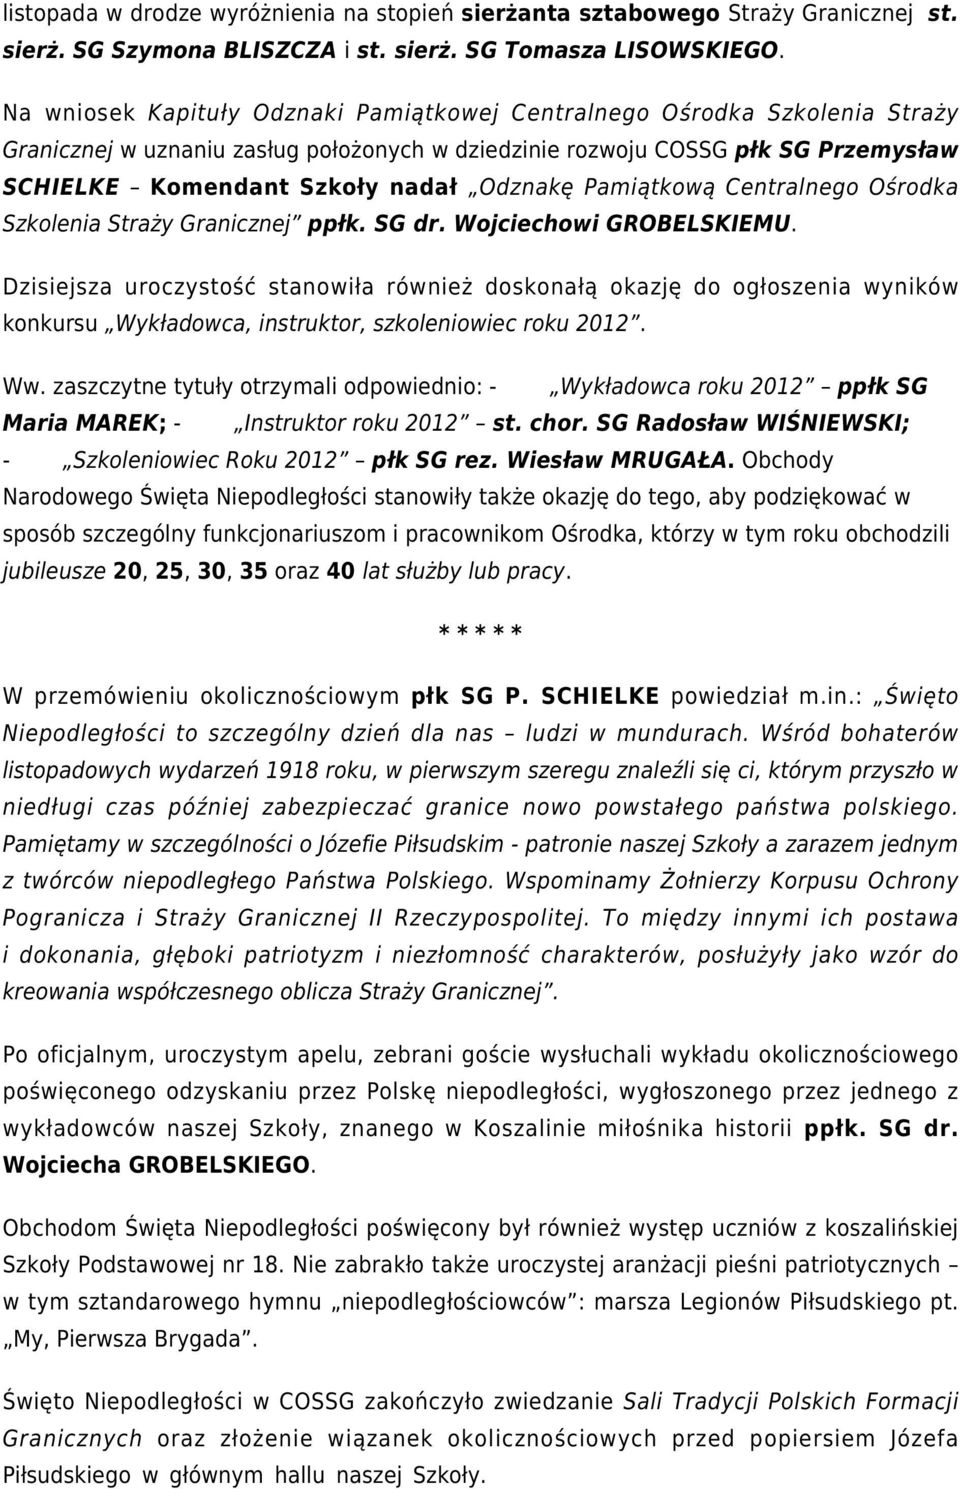 Odznakę Pamiątkową Centralnego Ośrodka Szkolenia Straży Granicznej ppłk. SG dr. Wojciechowi GROBELSKIEMU.